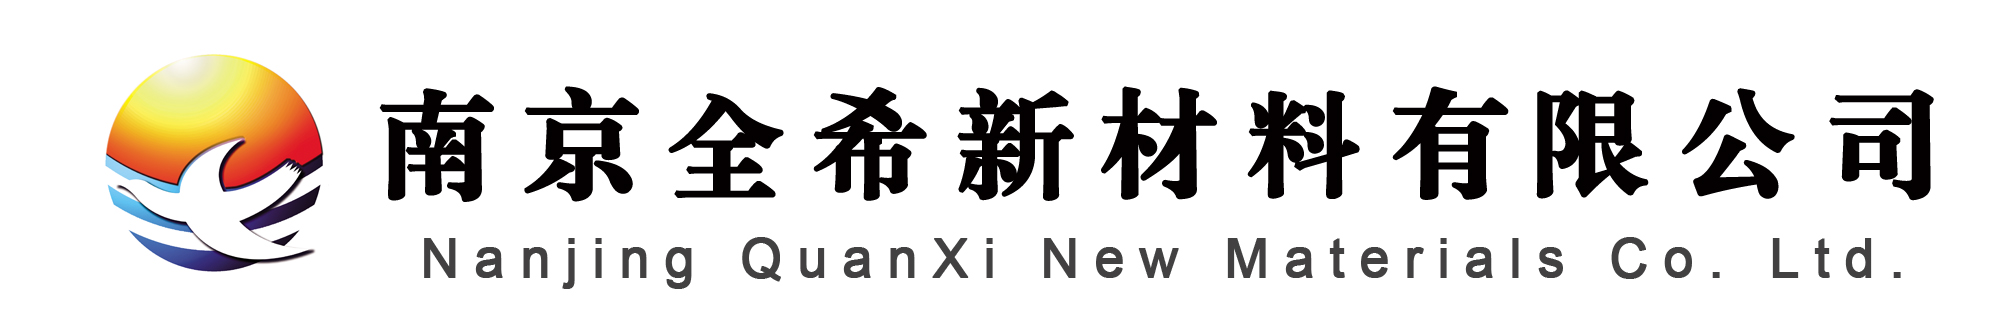 澳门新浦新京logo